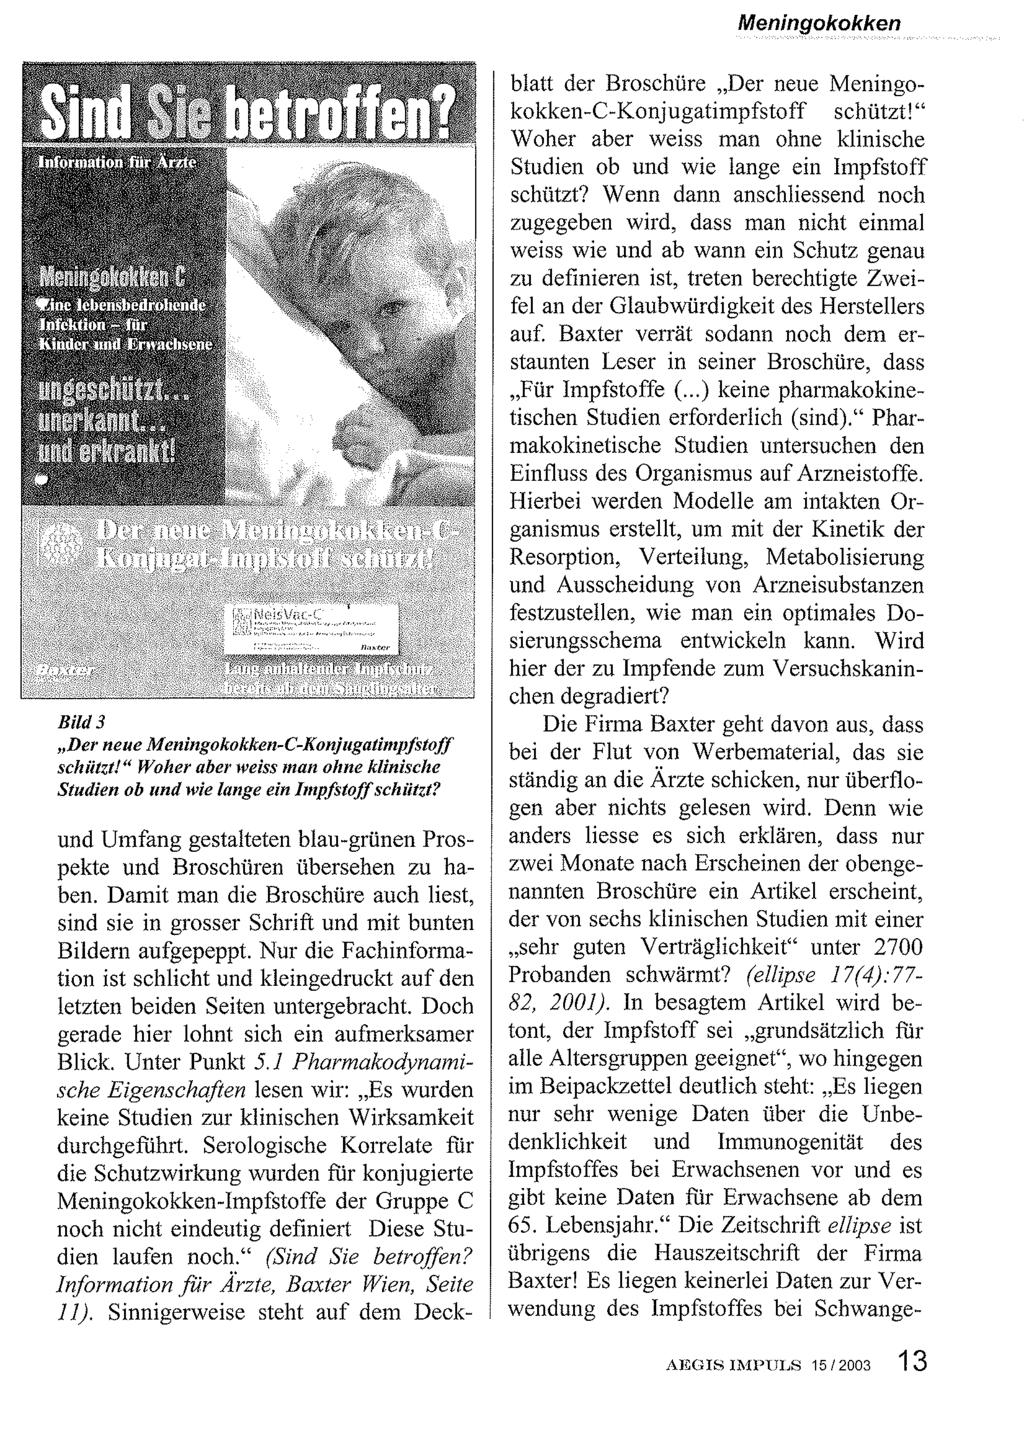 Meningokokken Bild 3 "Der neue Meningokokken-C-KonjugatimpjstojJ schiitzt!" Woher aber weiss man ohne klinische Studien ob und wie lange ein Impfstoffschiitzt?